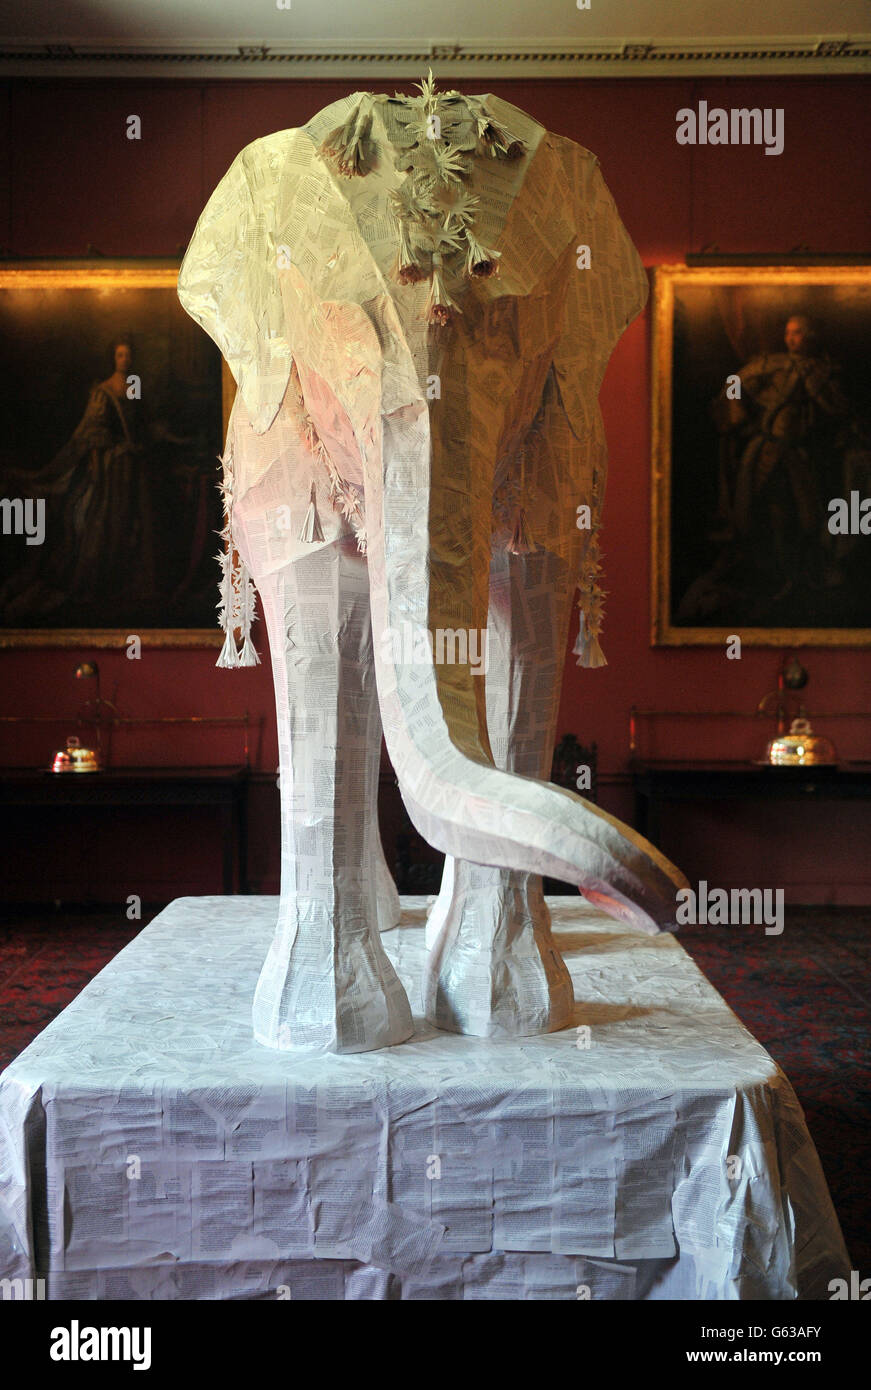 The Elephant in the Room, une sculpture de 12 pieds d'un éléphant indien par Ballet Rambert designer de production, Michael Howells, et terminé dans des pages de livre de poche, dans la grande salle à manger de la demeure ancestrale de Port Eliot à St Allemands, Cornwall. Banque D'Images